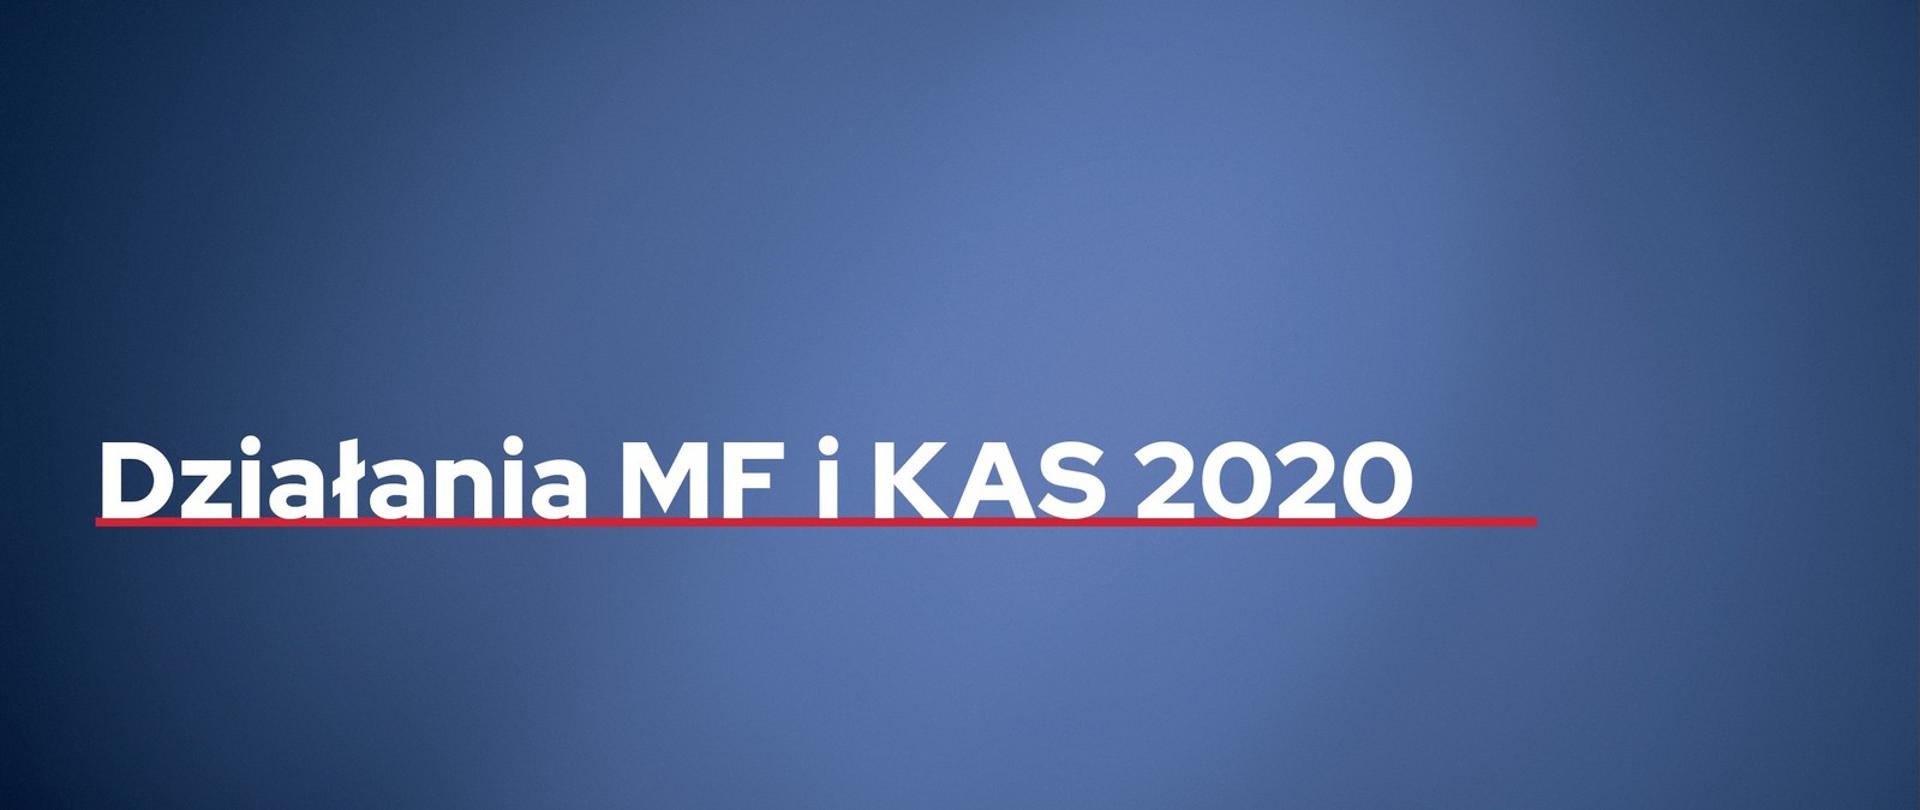 Napis podkreślony czerwoną kreską: Działania MF i KAS 2020